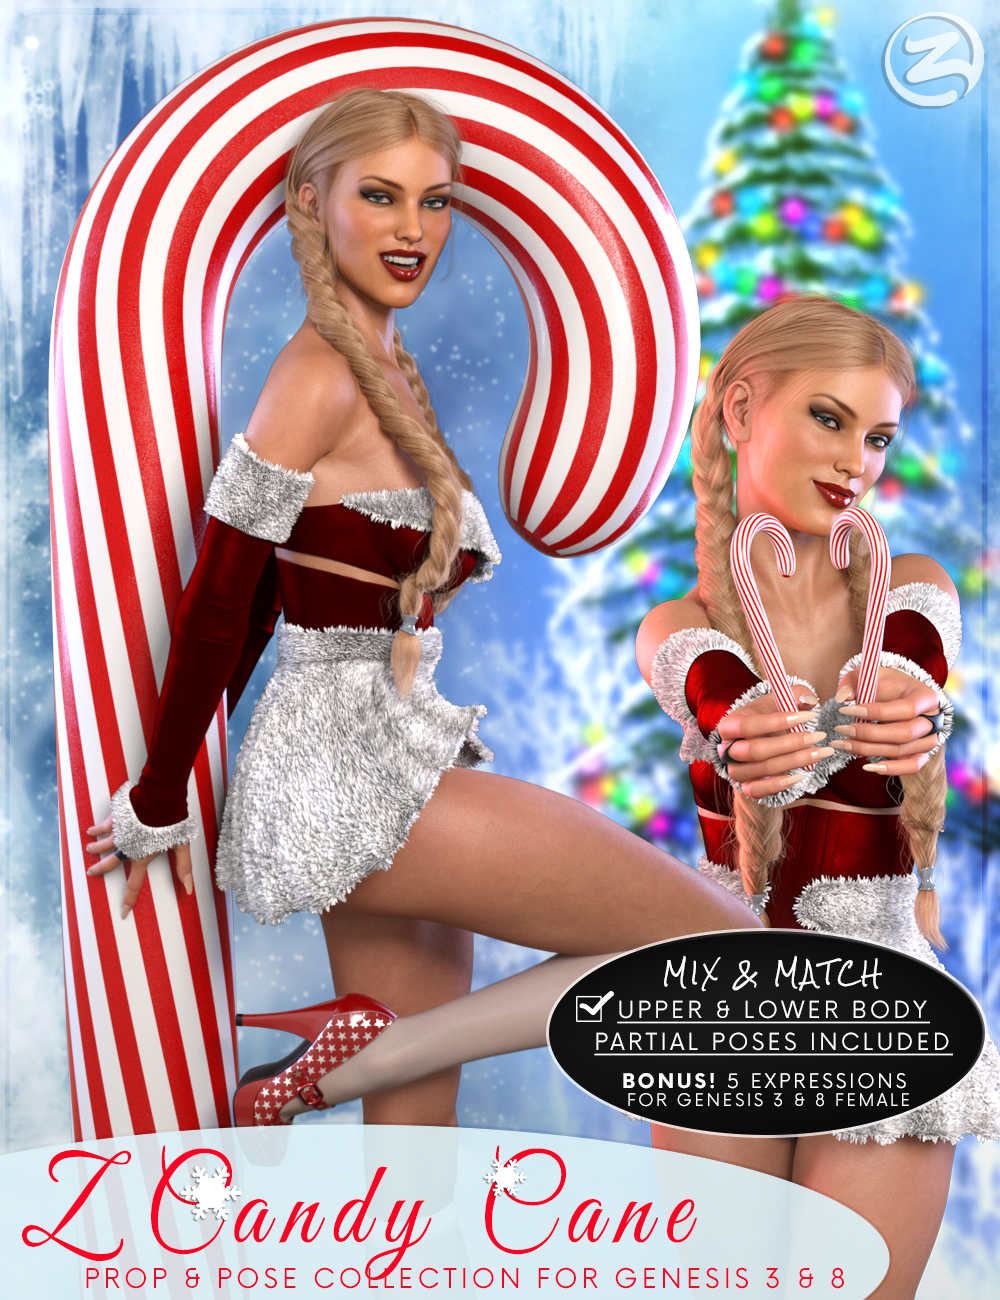 Z Candy Cane - Prop, Poses & Partials for Genesis 3 & 8 Female by: Zeddicuss, 3D Models by Daz 3D